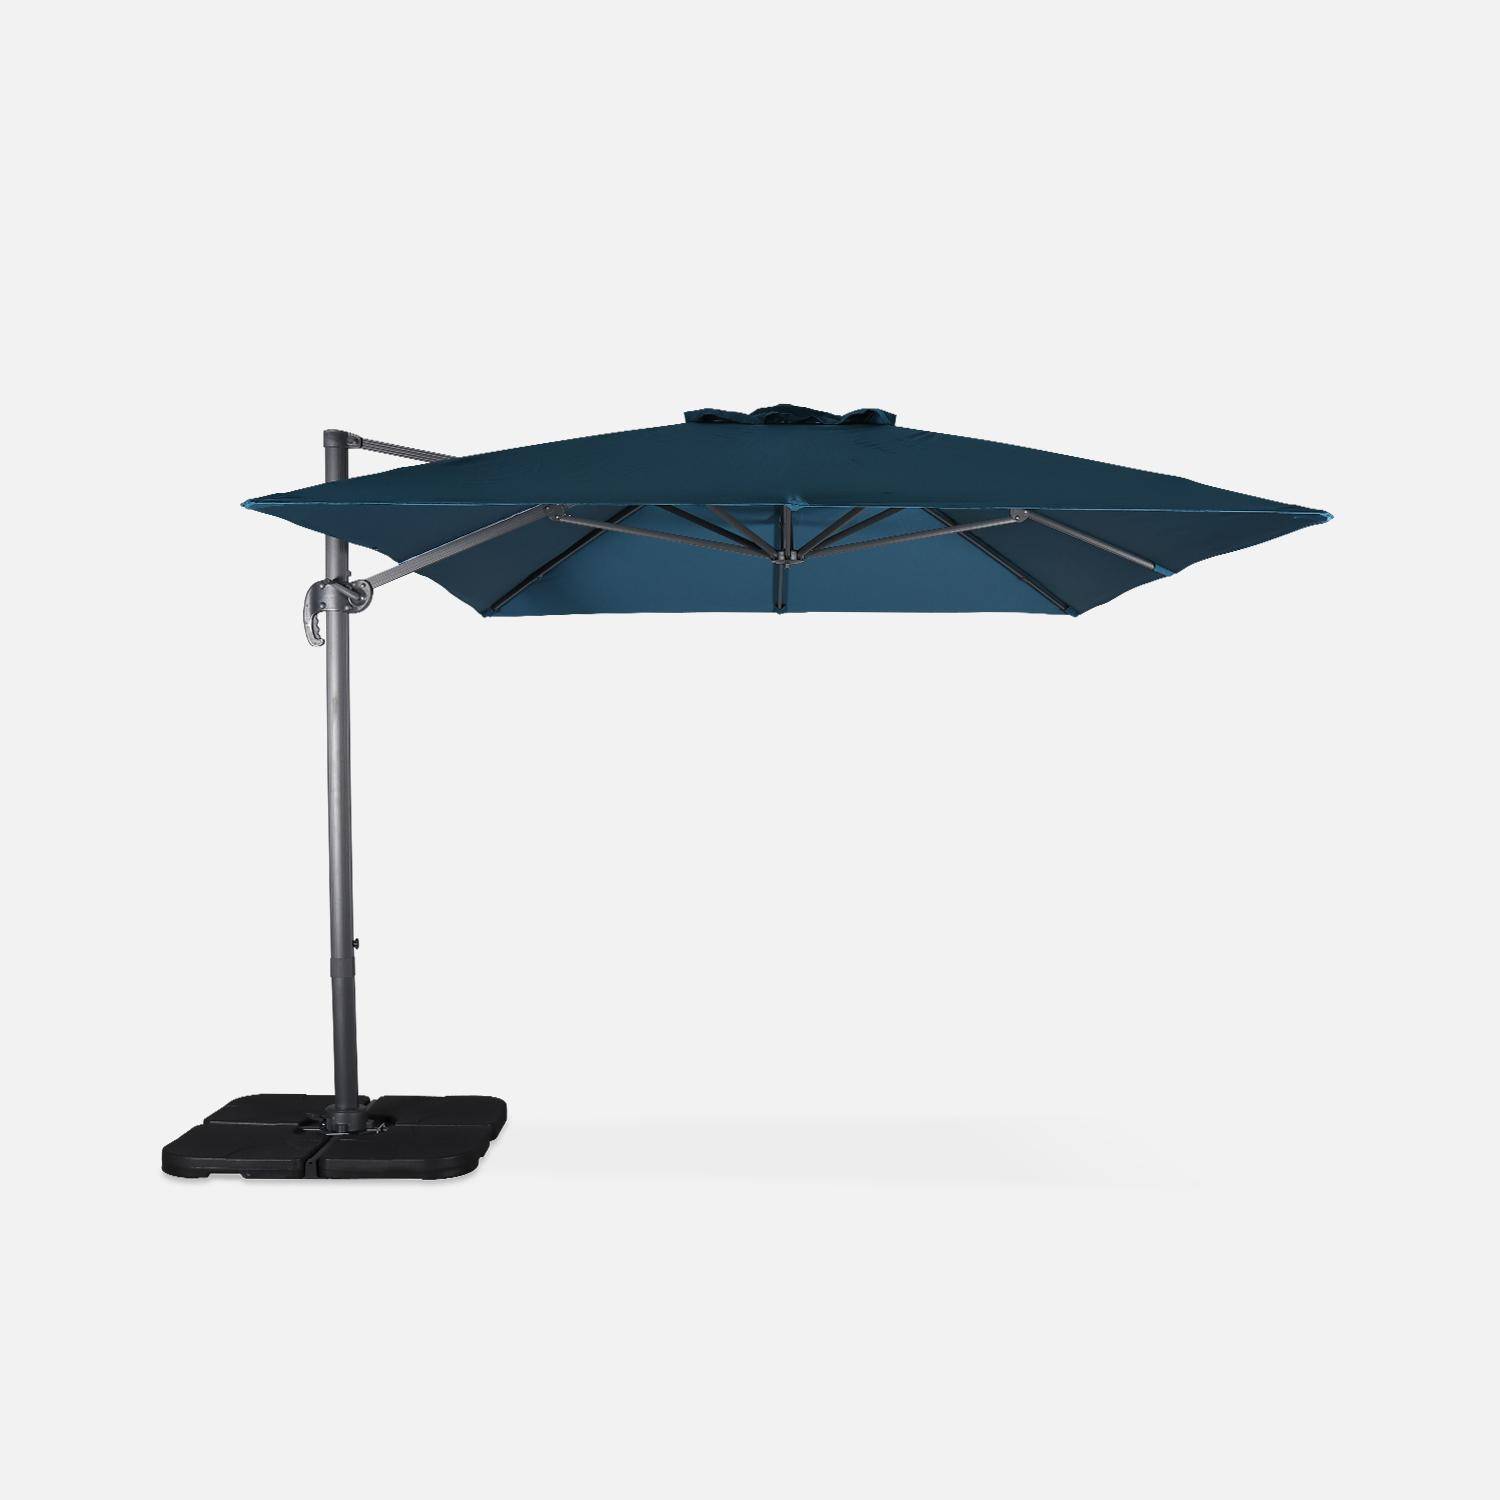 Eend blauwe rechthoekige parasol 3x4m + verzwaarde tegels 50x50cm,sweeek,Photo4